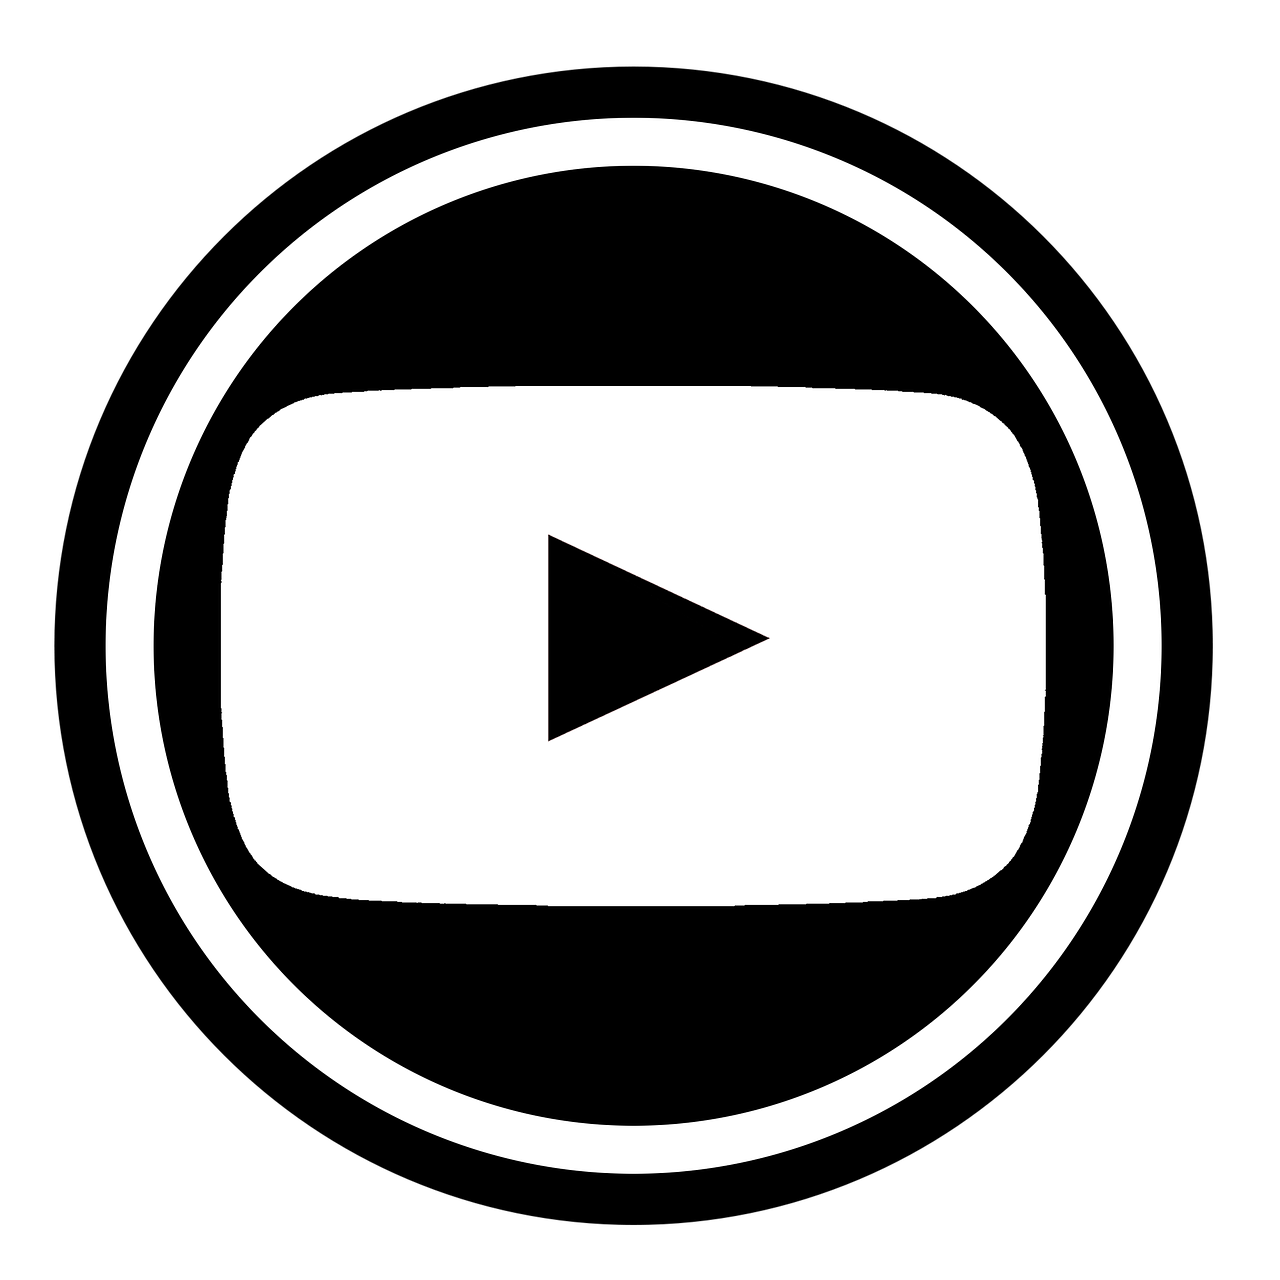 youtube logo icon free photo